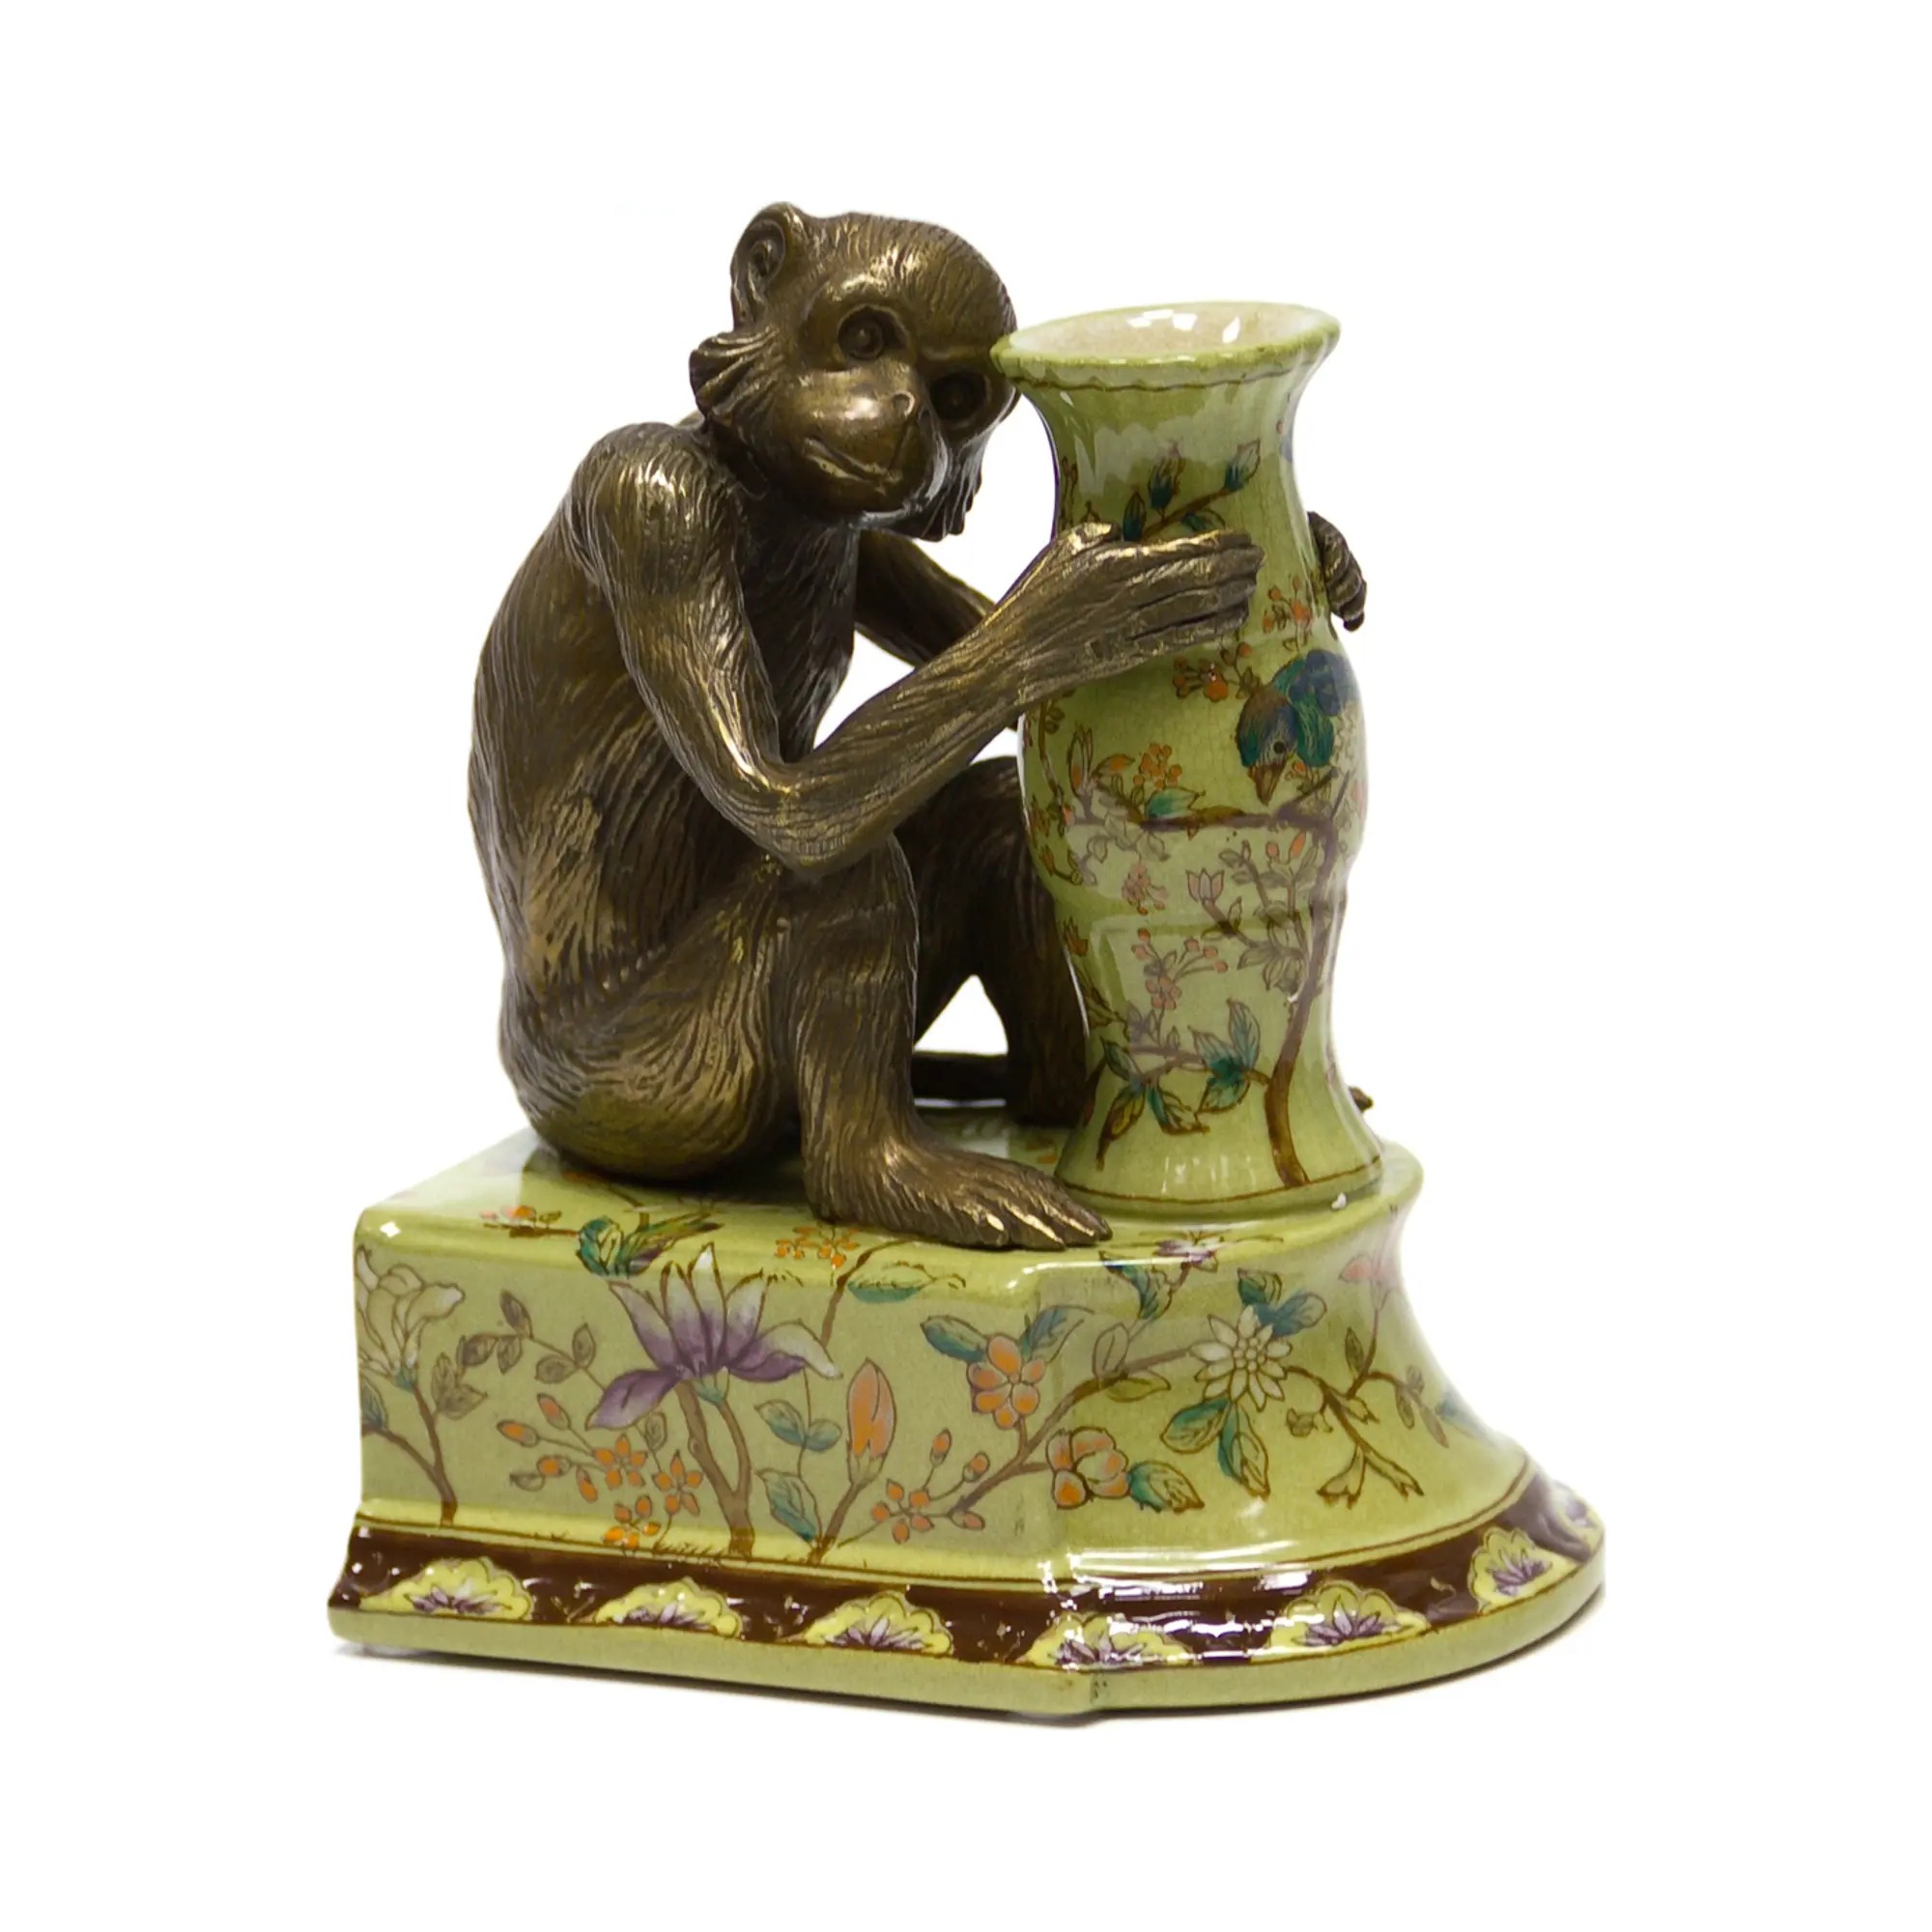 Держатель для книг Wah luen handicraft обезьяна смотрит направо 20 см держатель для книг wah luen handicraft обезьяна смотрит направо 20 см